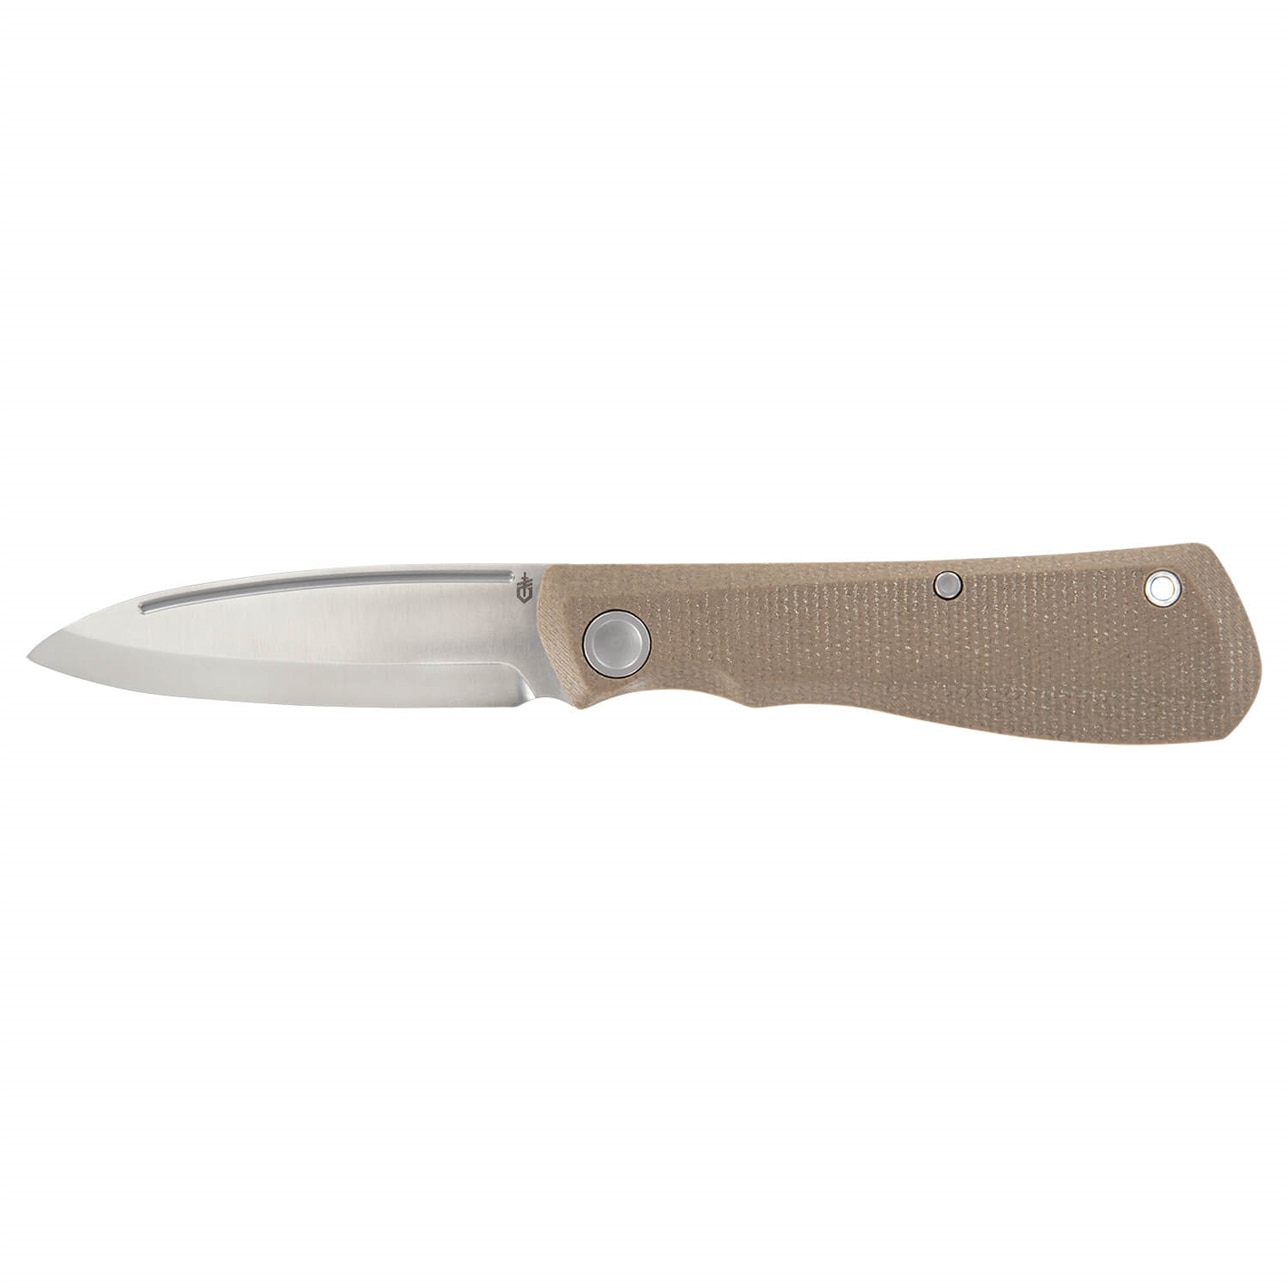 GERBER MANSFIELD SLIP JOINT MICARTA FOLDING D2 STEEL POCKET KNIFE - $15.95 w/free shipping @ Atlantic Knife